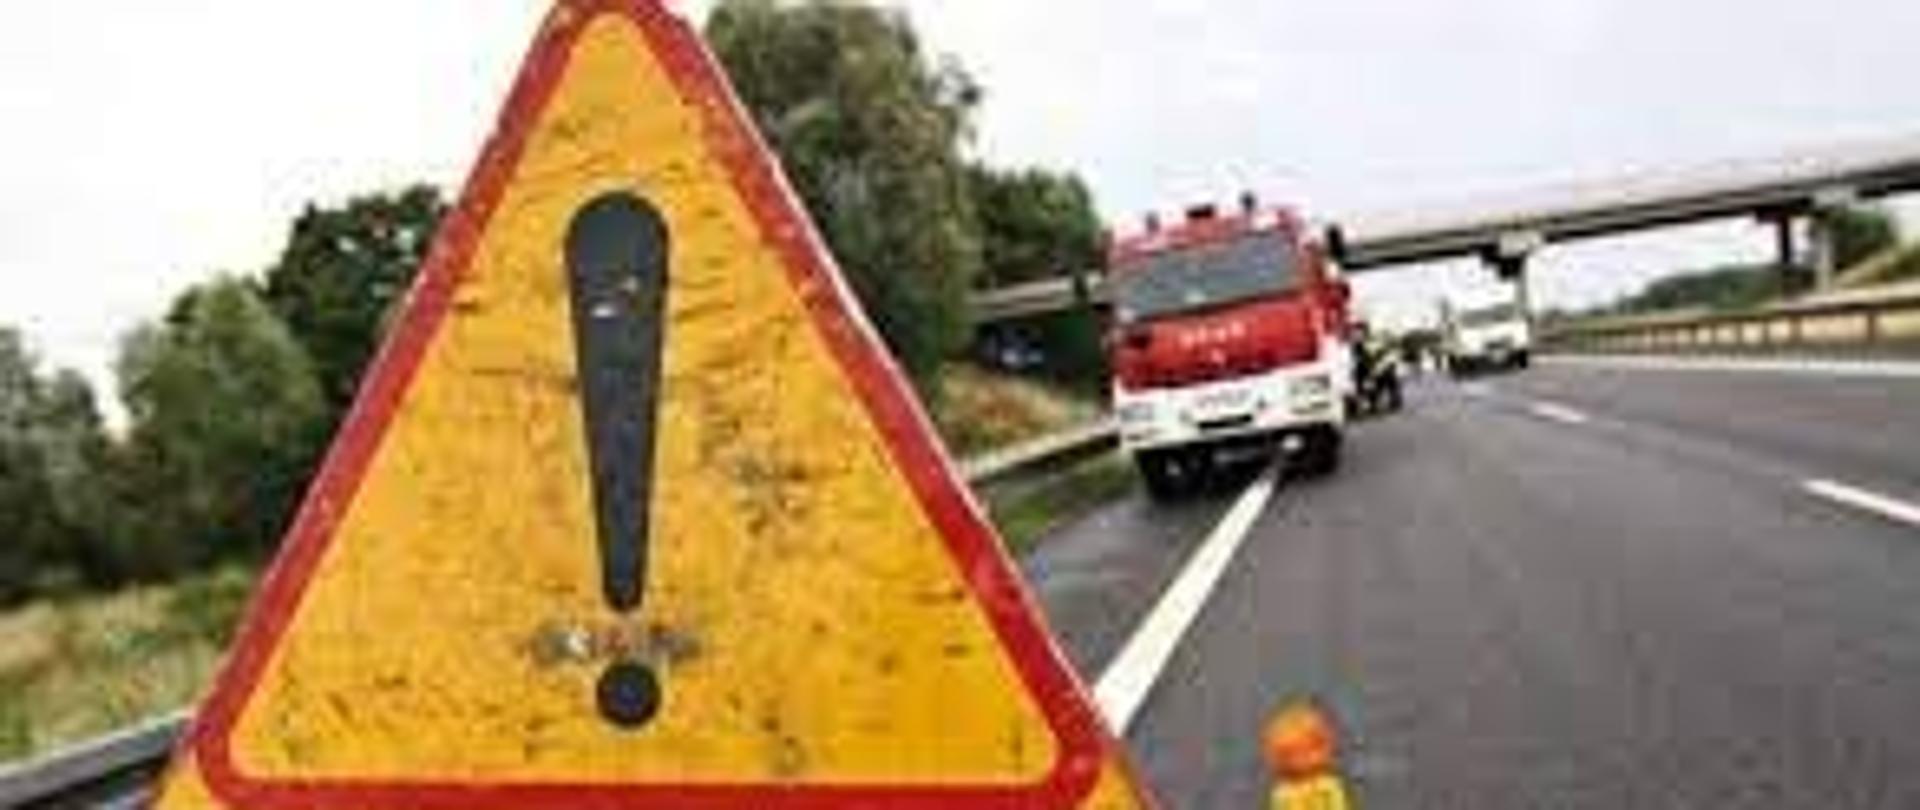 znak ostrzegawczy z napisem wypadek a w tle samochód strażacki